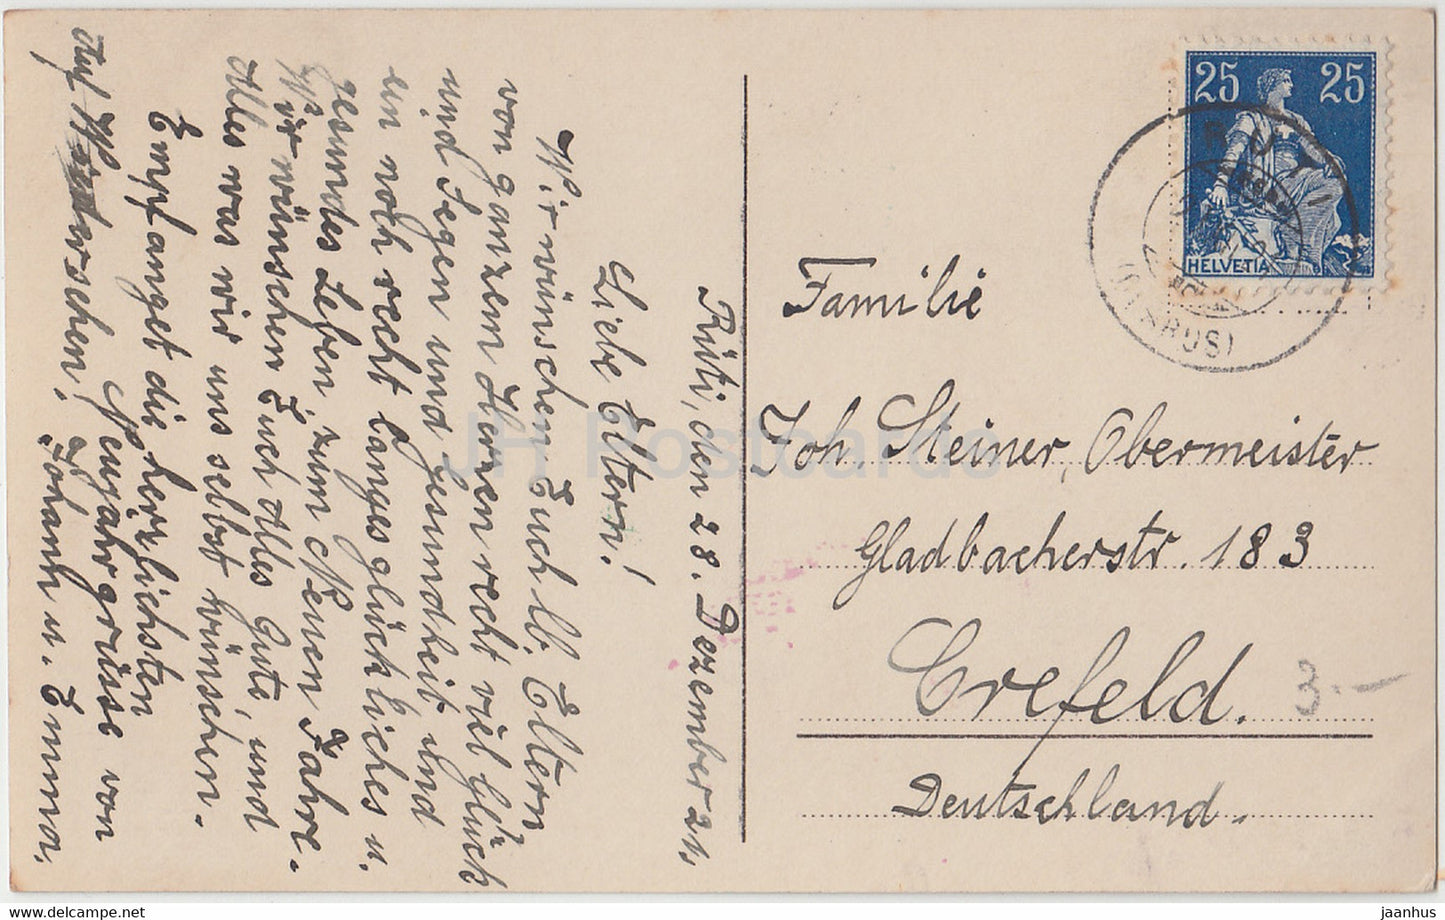 Carte de vœux du Nouvel An - Herzliche Neujahrsgrusse - enfants - Amag - carte postale ancienne - 1921 - Allemagne - utilisé